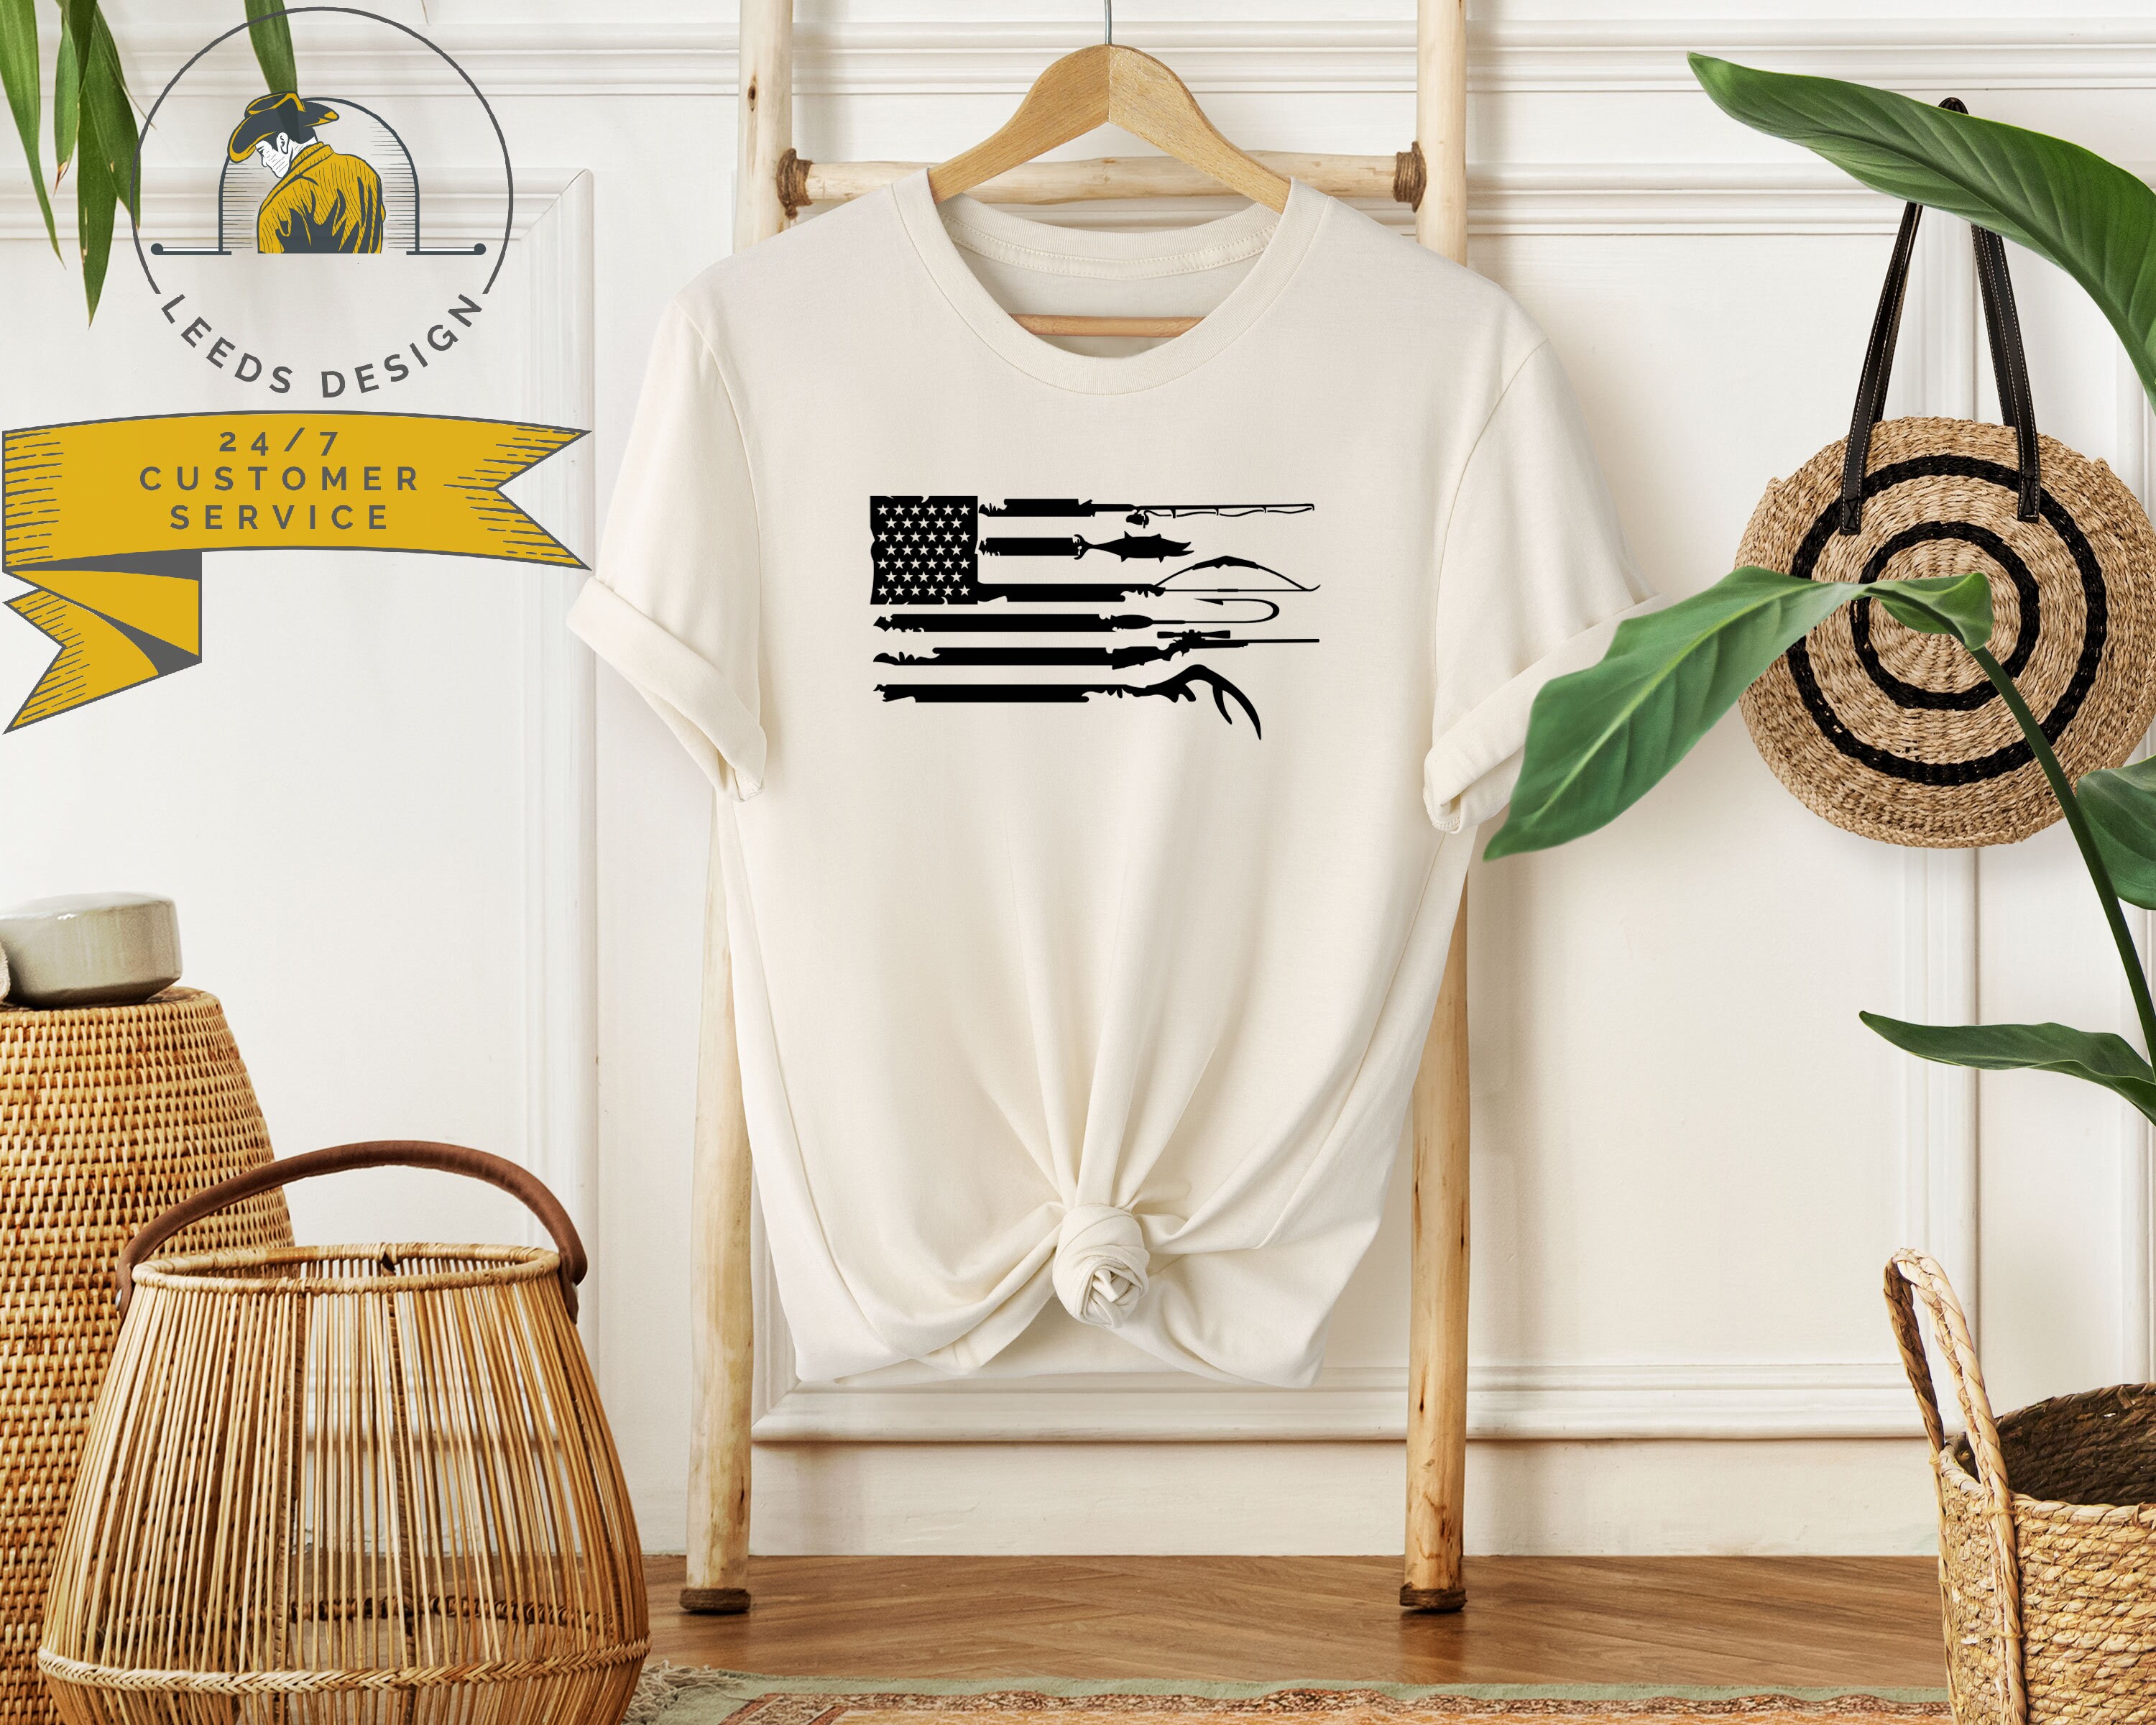 Hunting Shirt, Fishing Shirt, Hunting USA Flag Shirt, Gift for